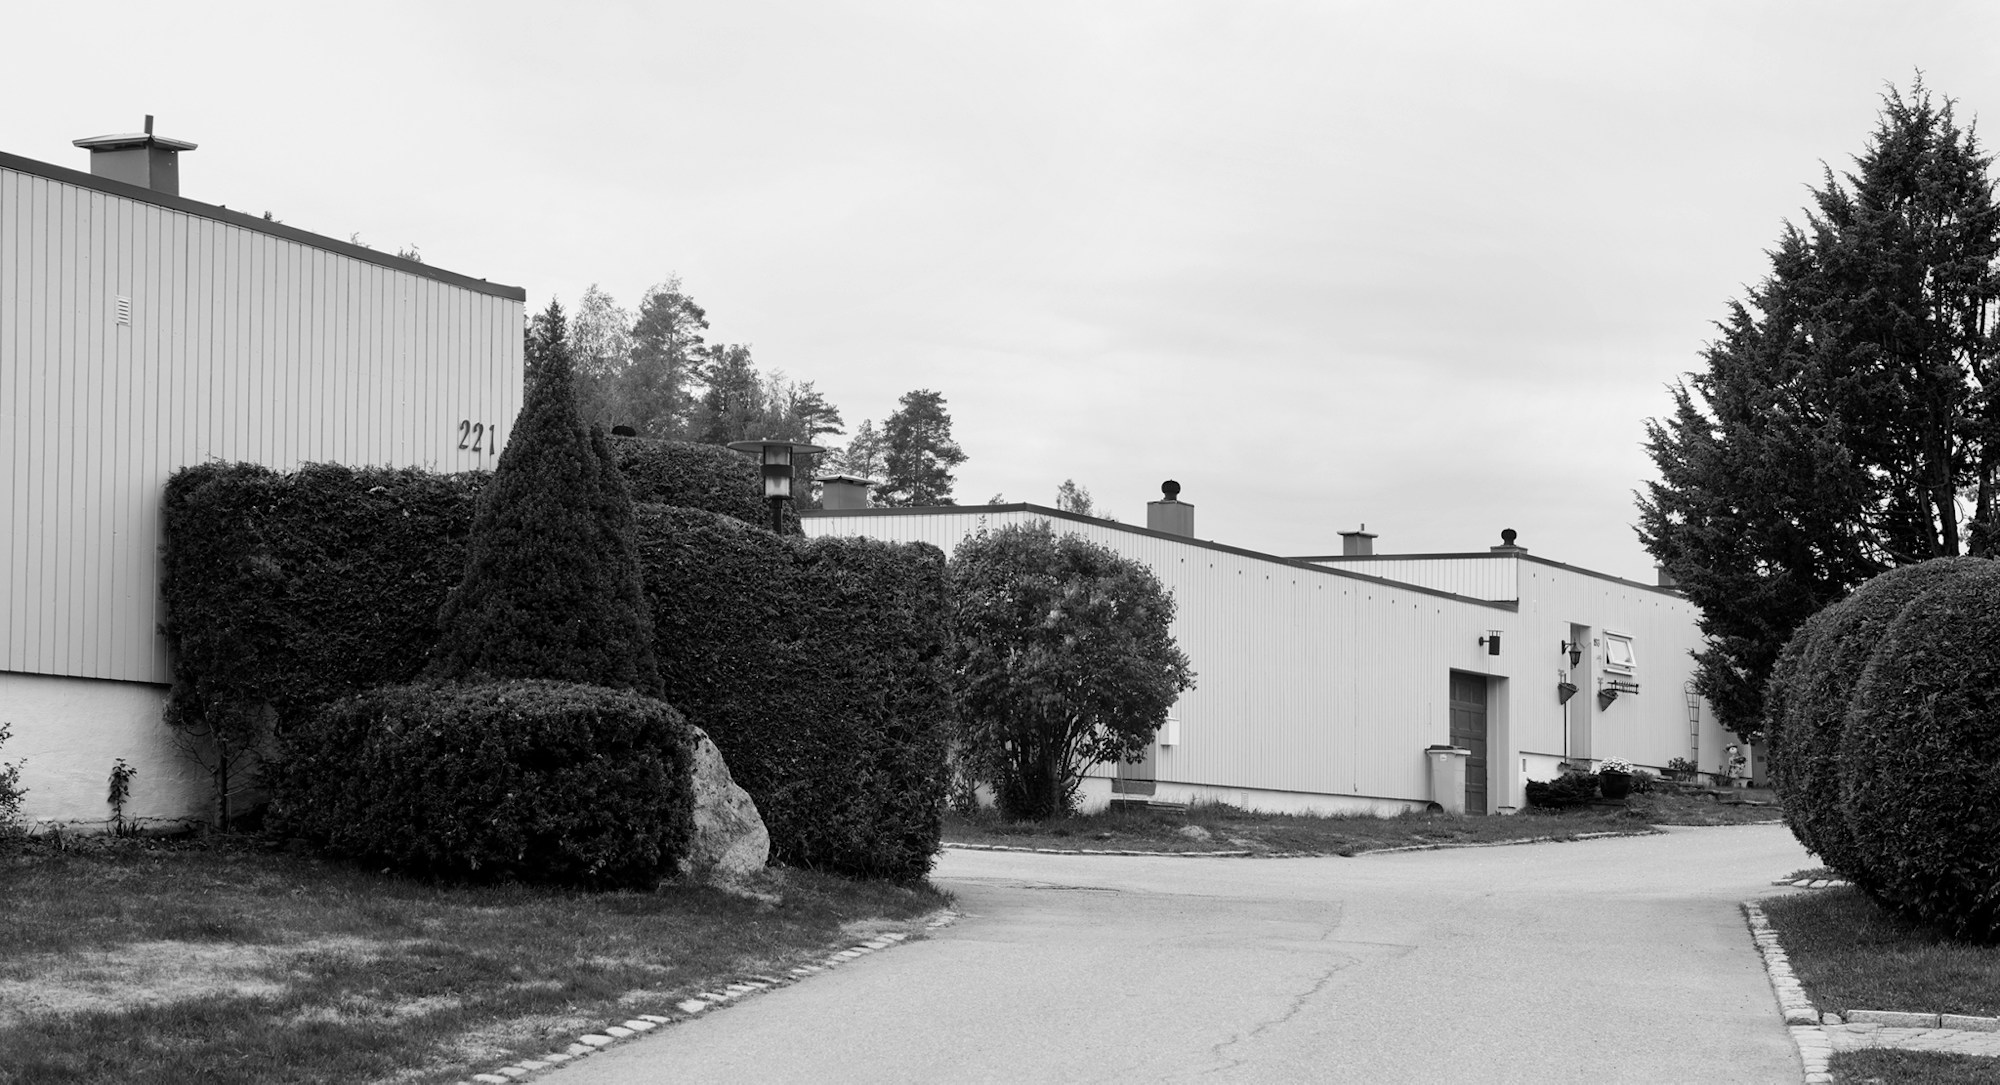 En av gatene i Alunsjø borettslag med atriumhus på rekke og rad bortover.